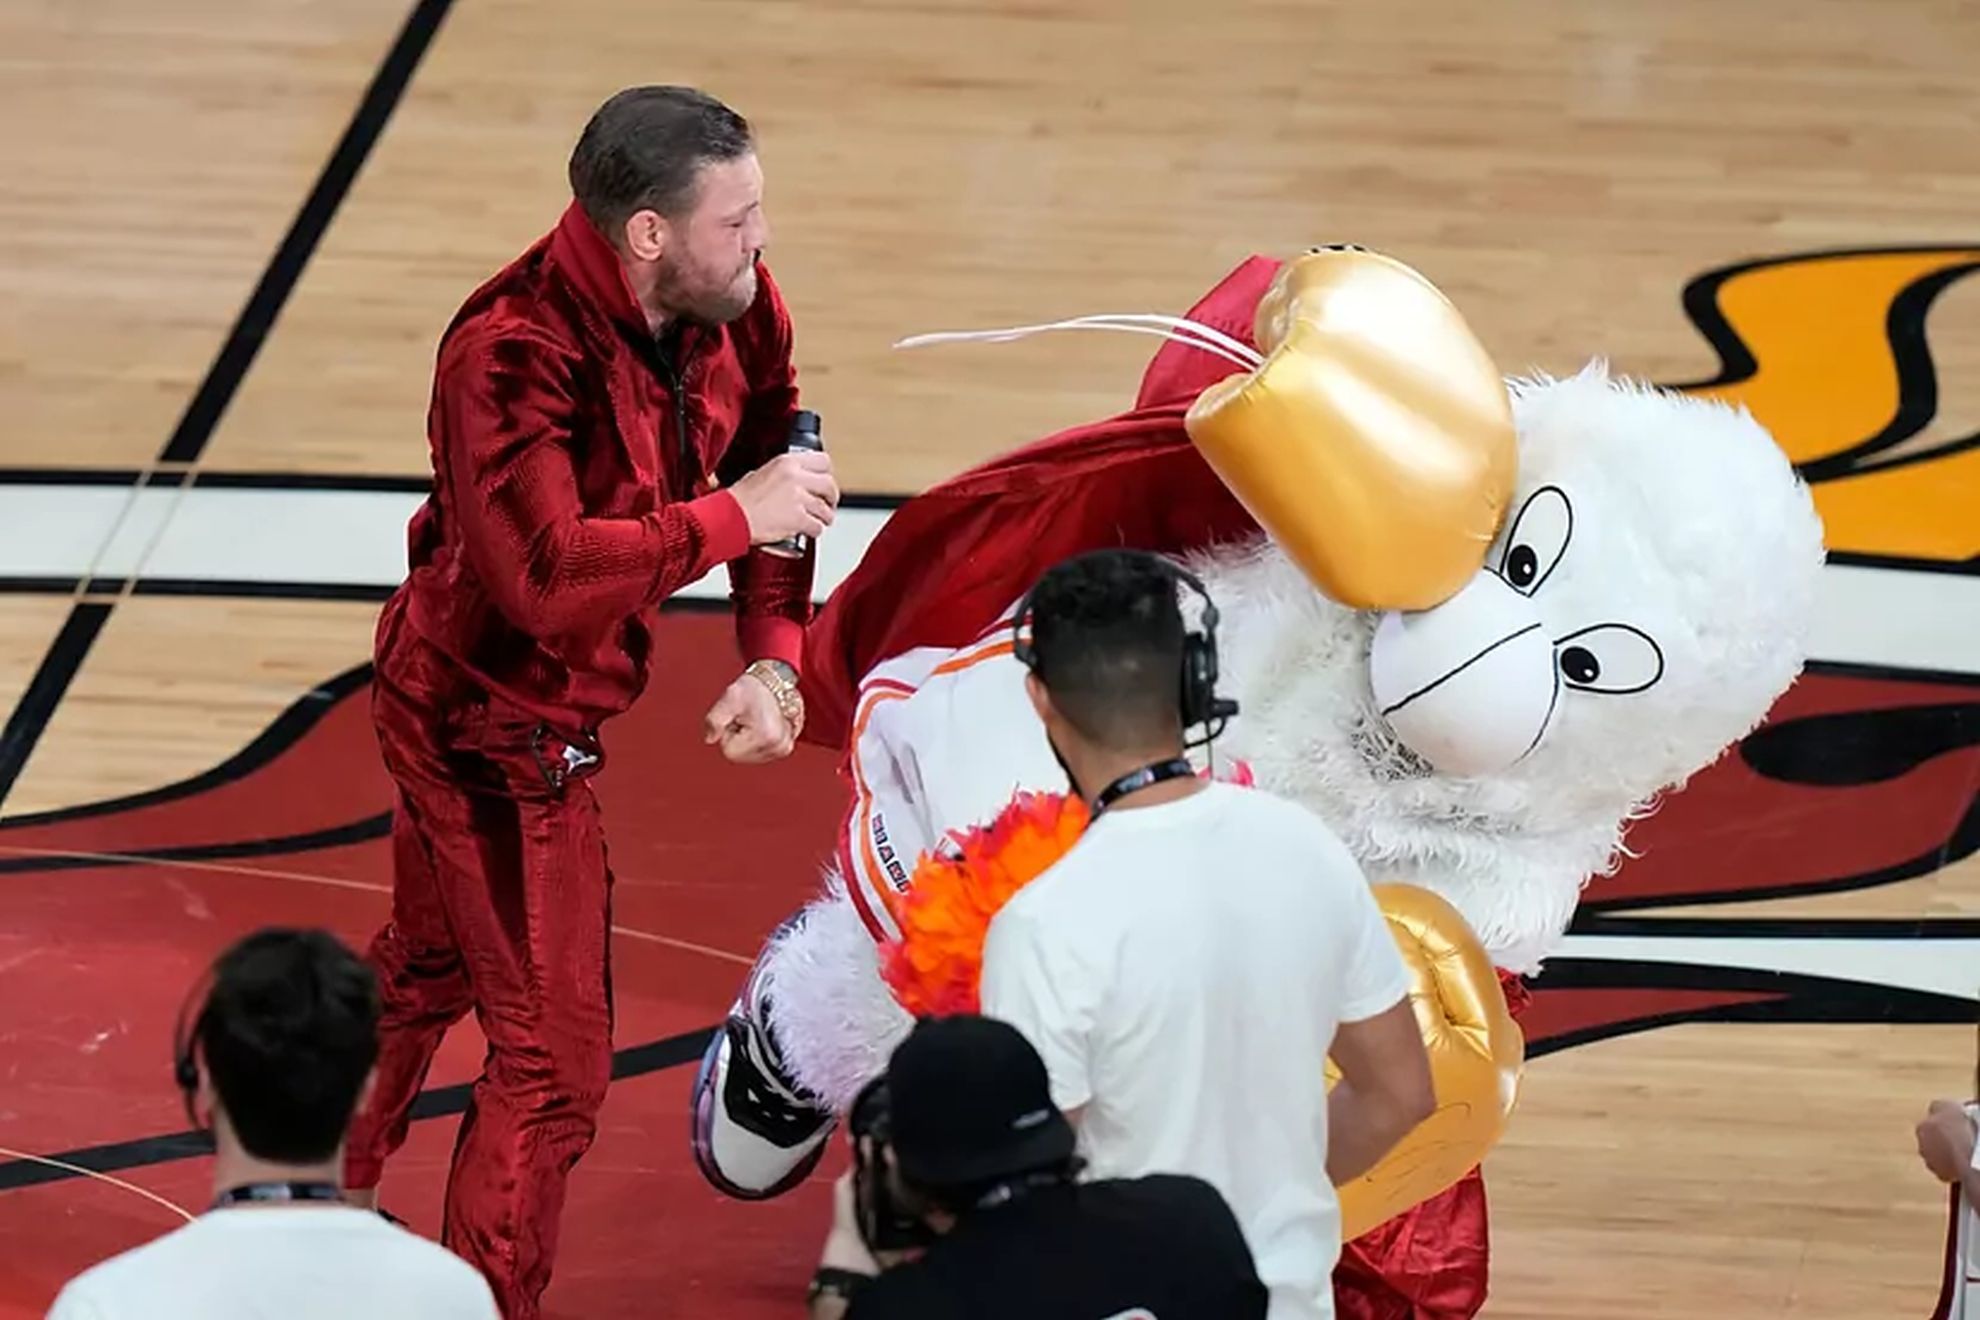 Conor McGregor's Miami mascot slam